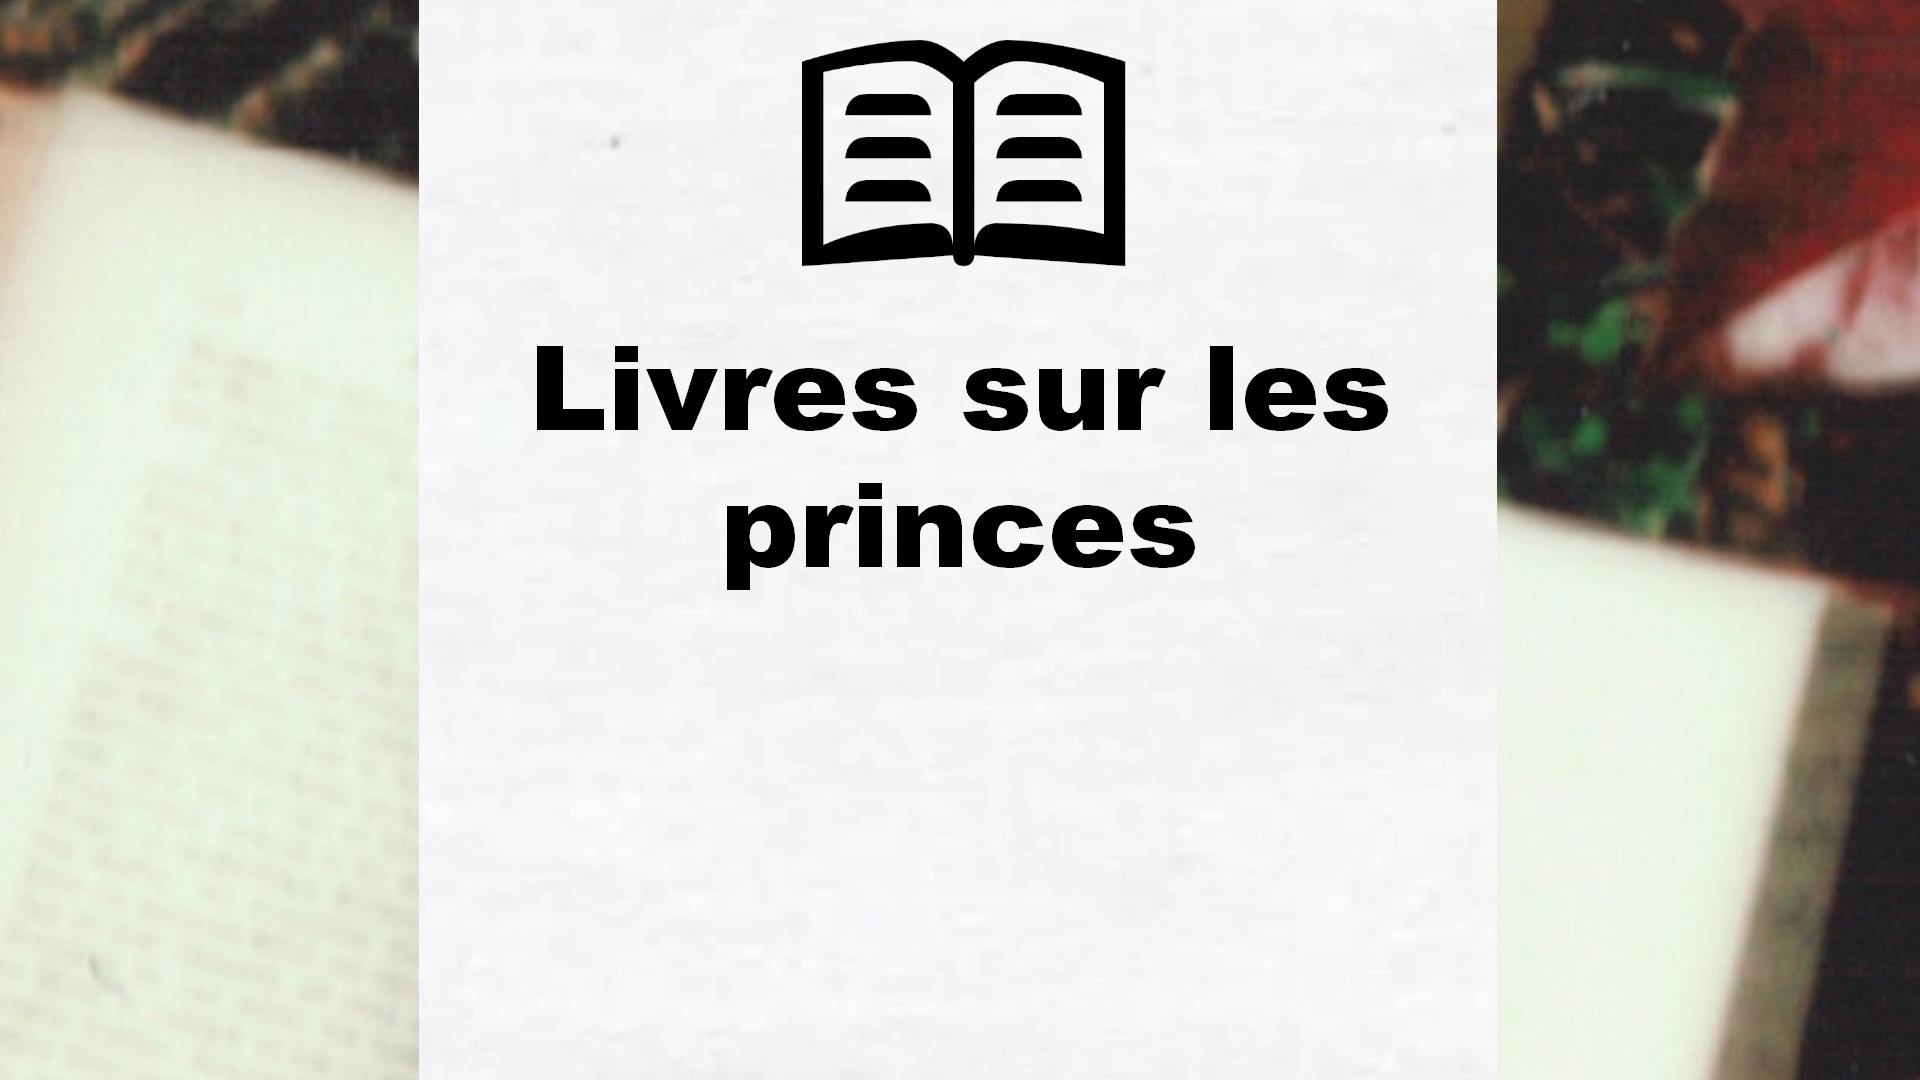 Livres sur les princes